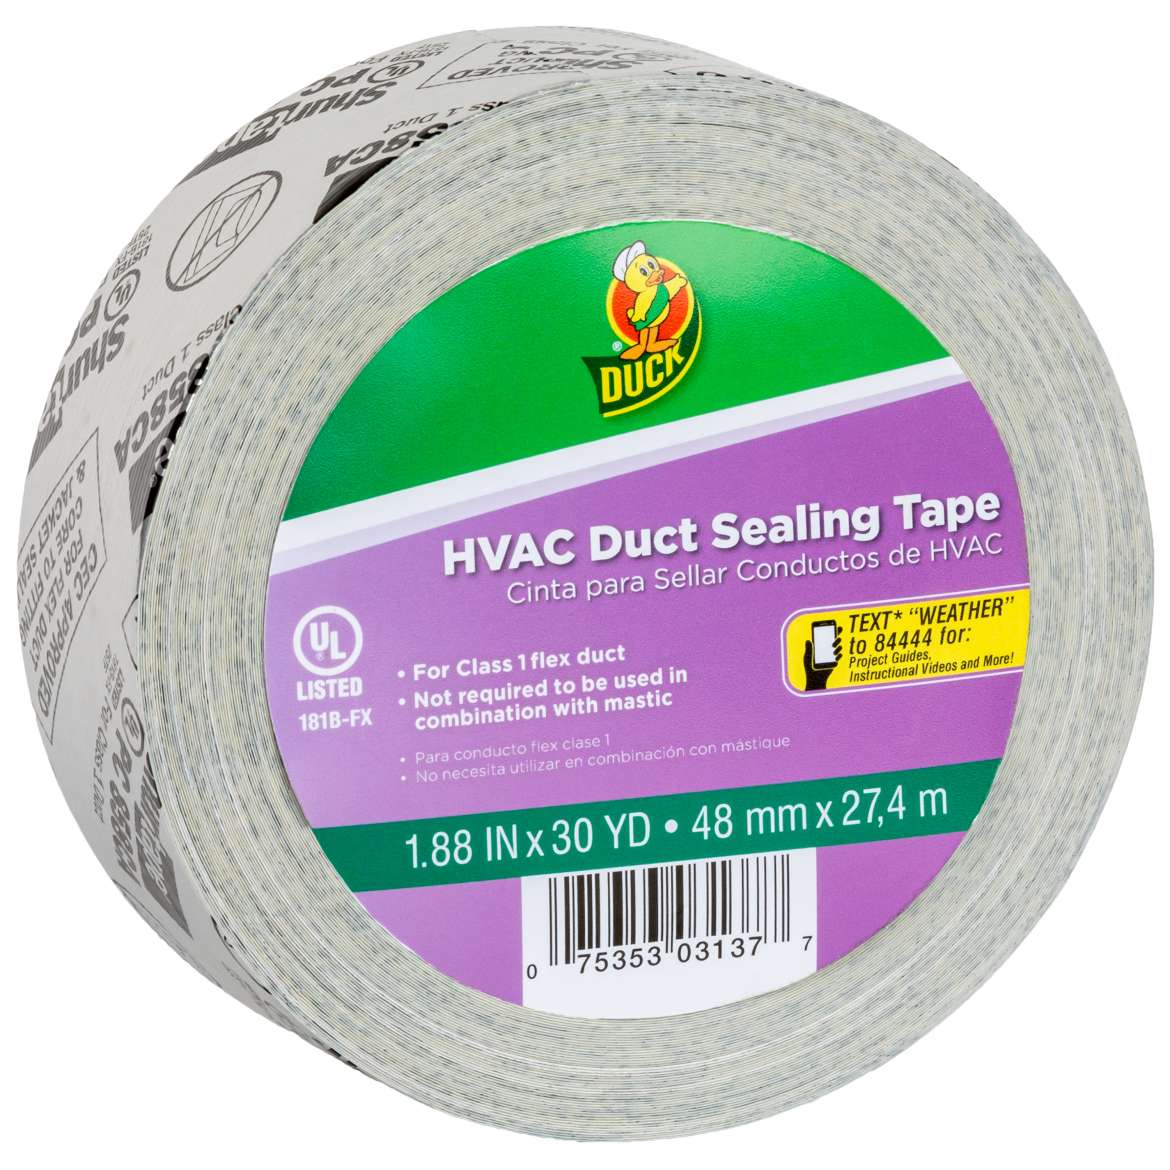 HVAC Duct Sealing Tape